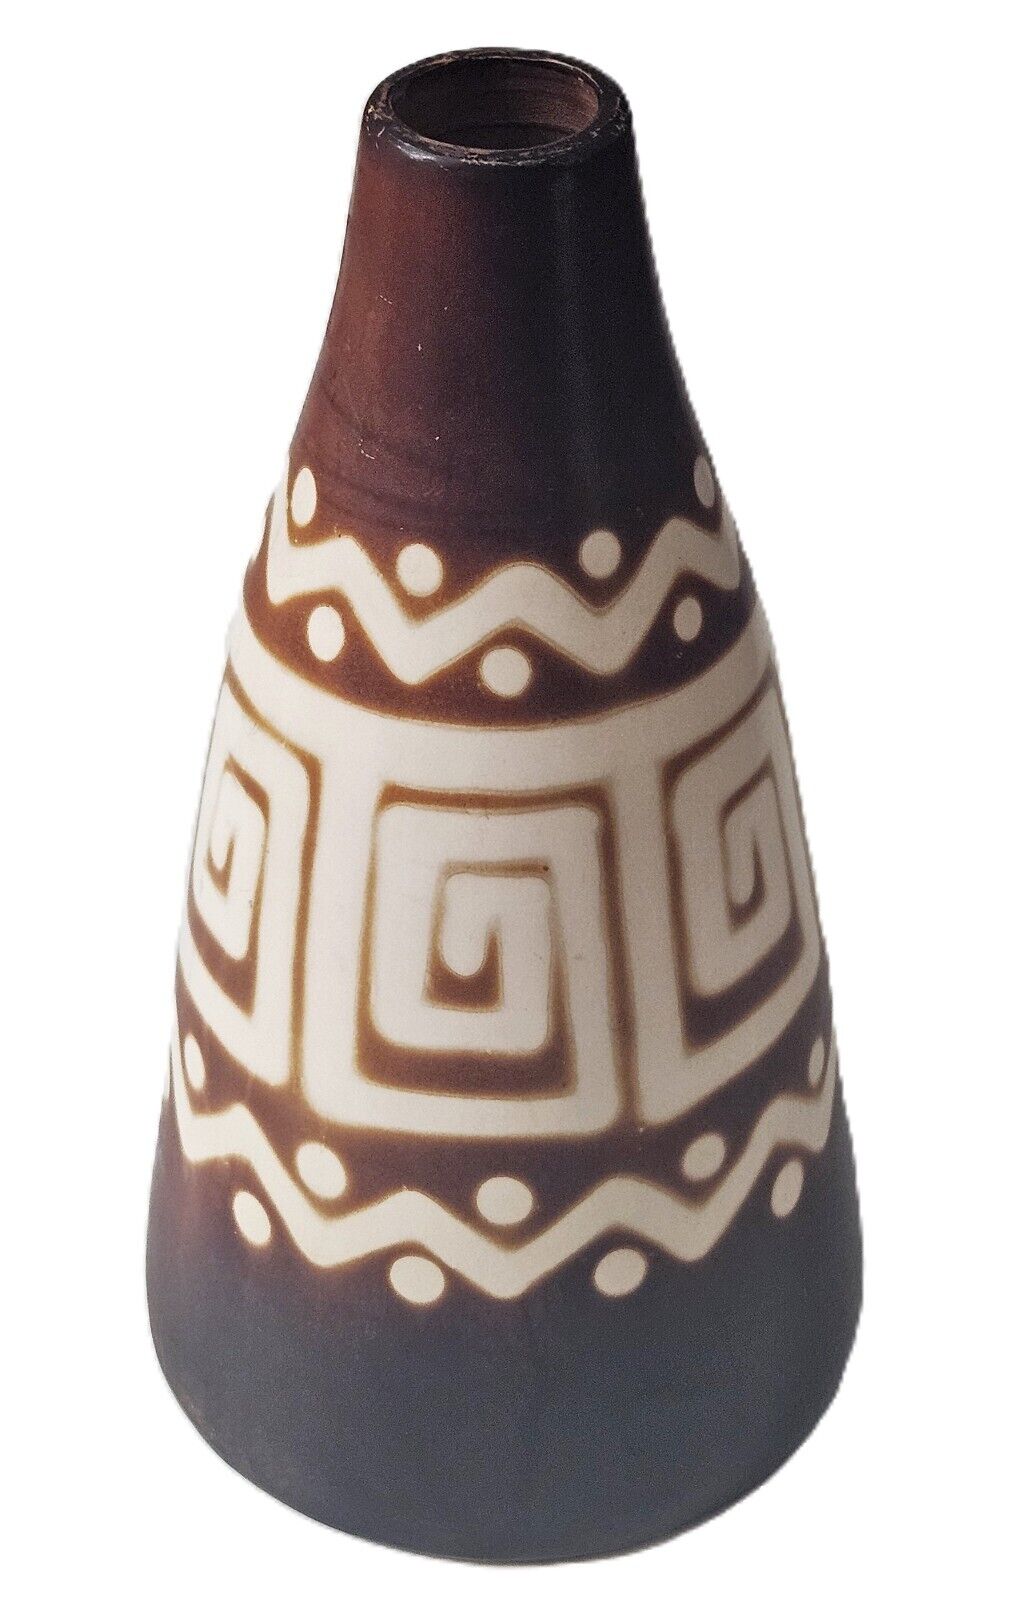 Vintage Santodio Paz Handcrafted Chulucanas Ceramic Decorative Vase